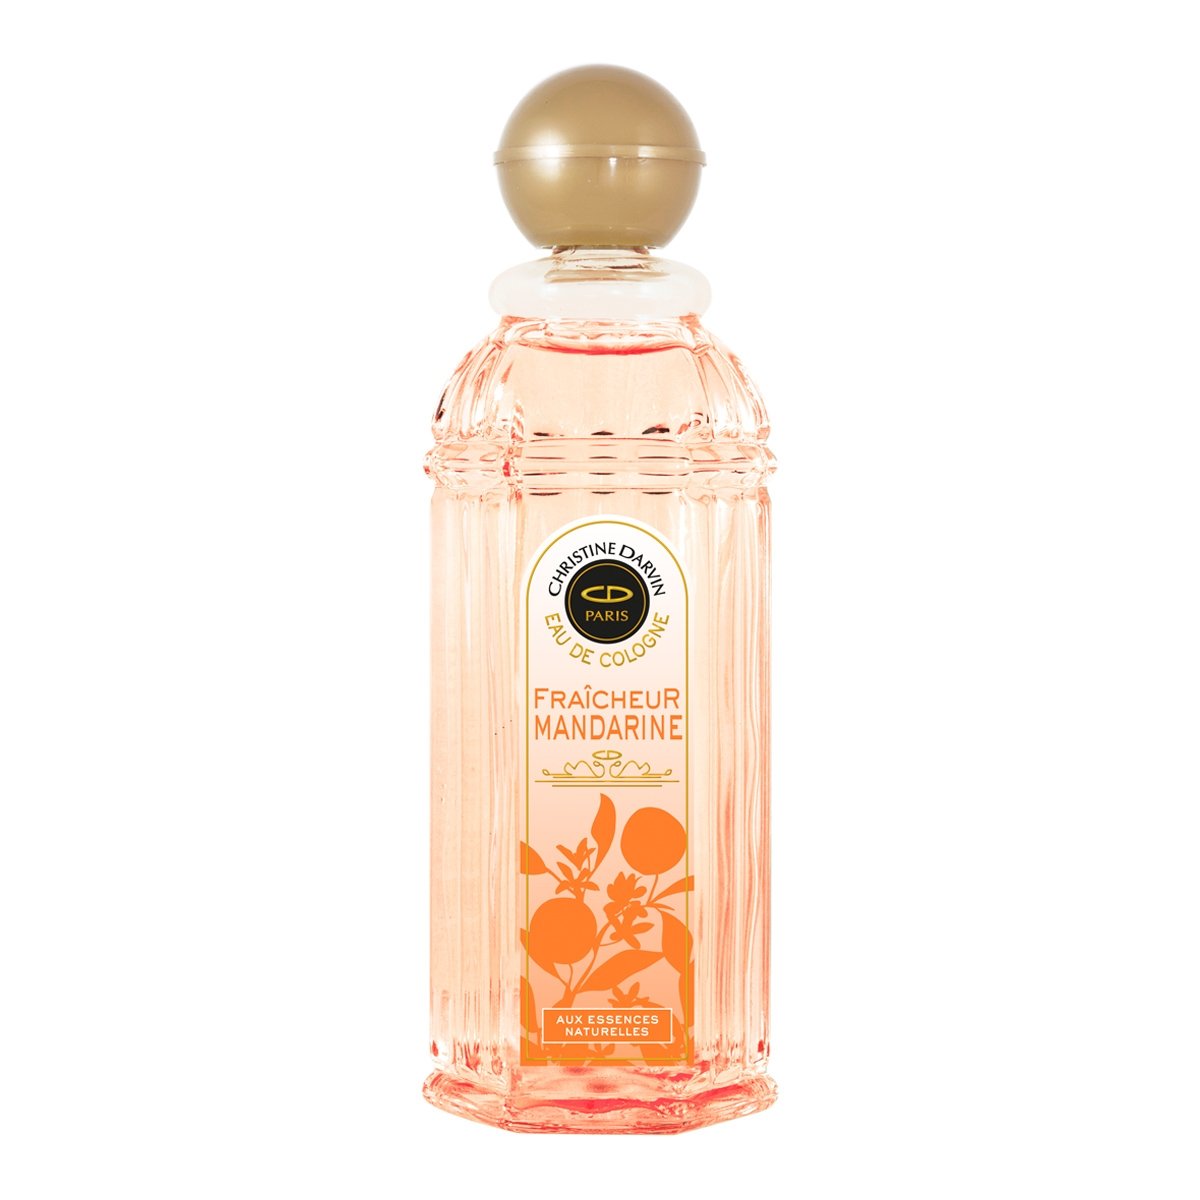 Perfume Christine Darvin Fraicheur Mandarine - Eau de Cologne 250ml 1